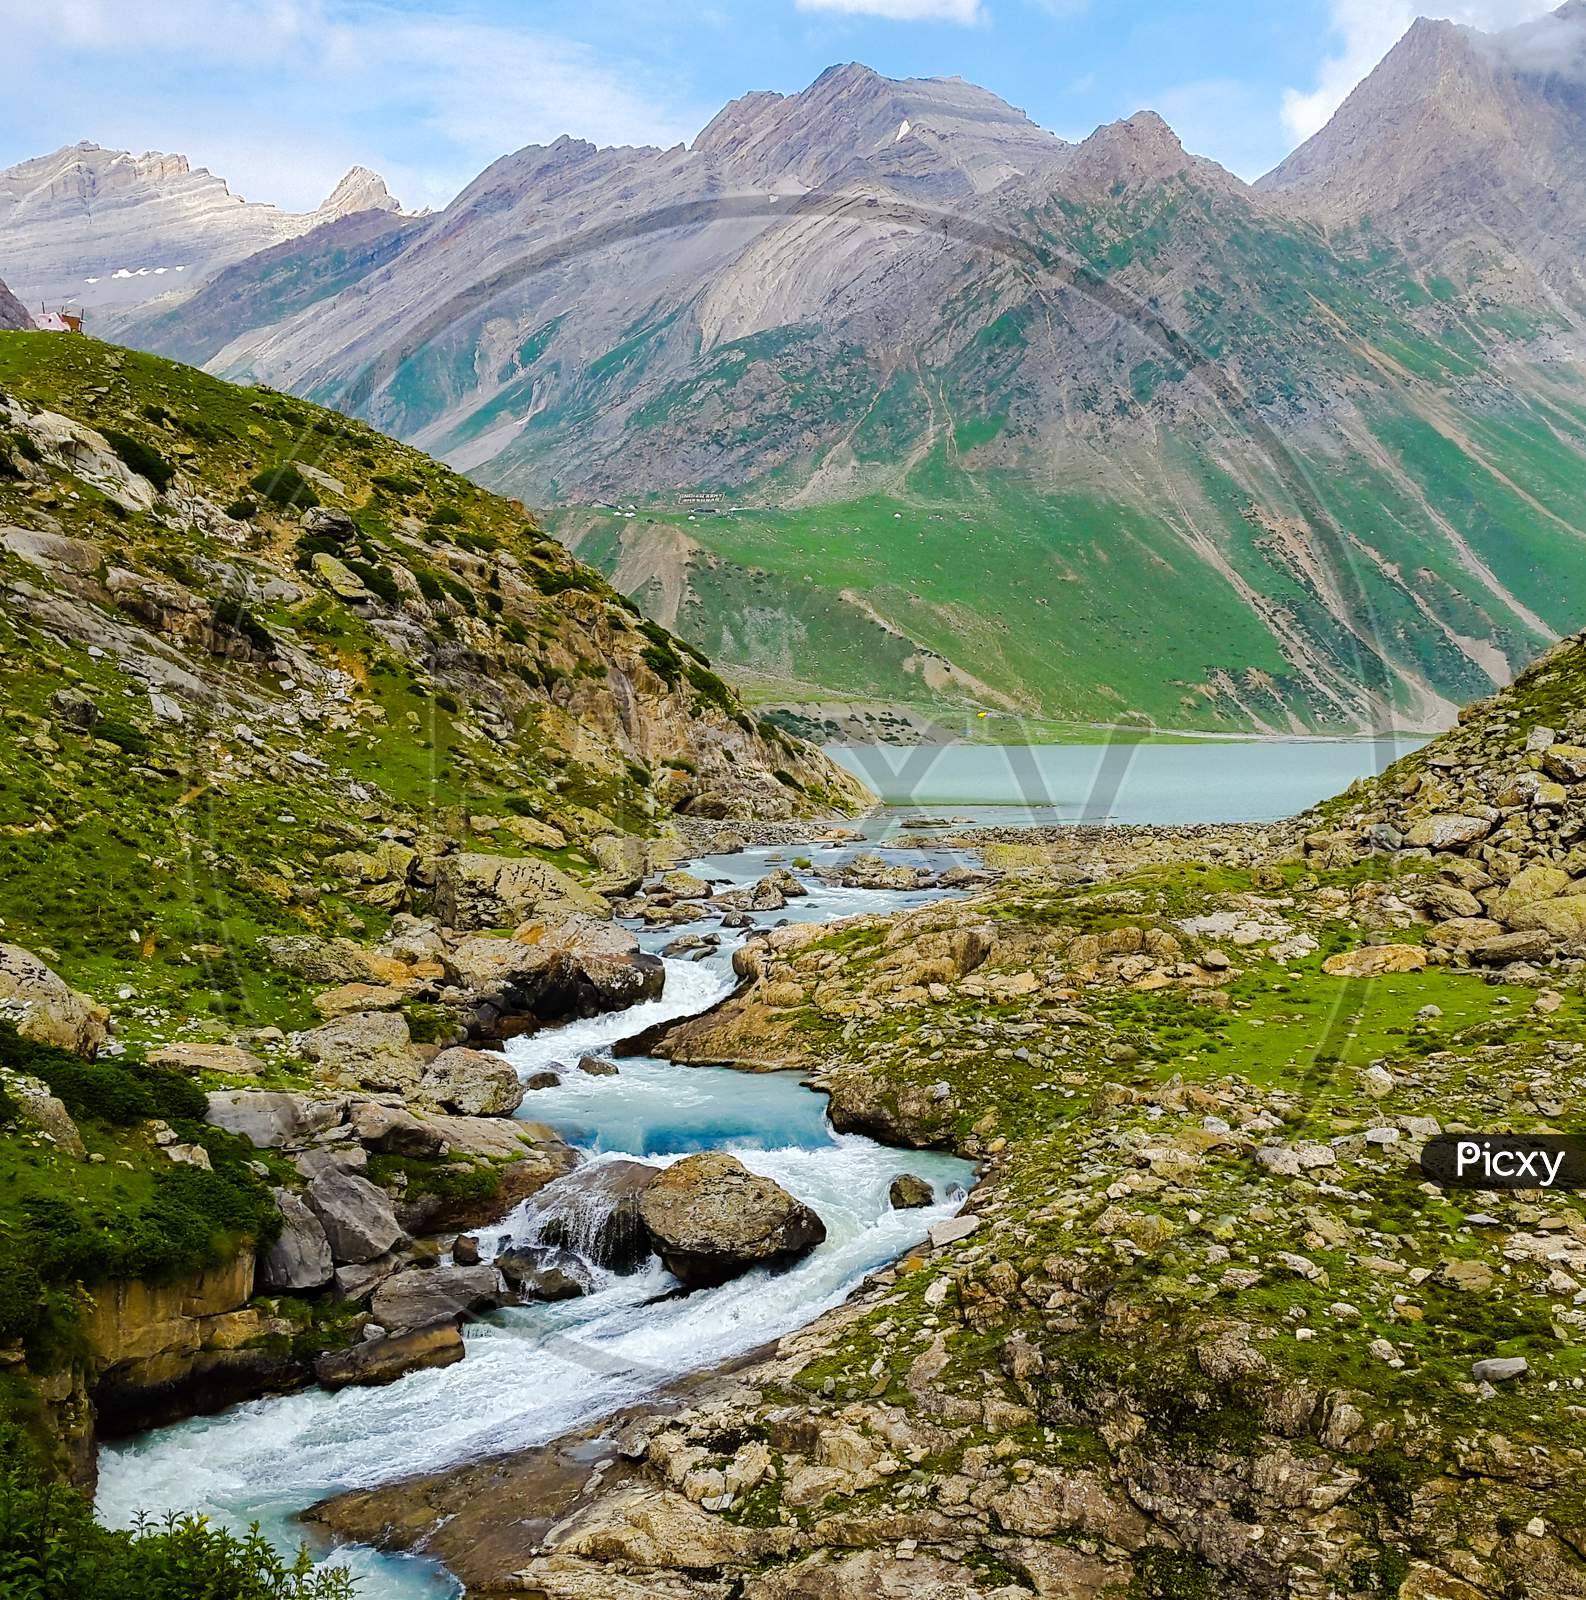 River flows through Indian Himalayas